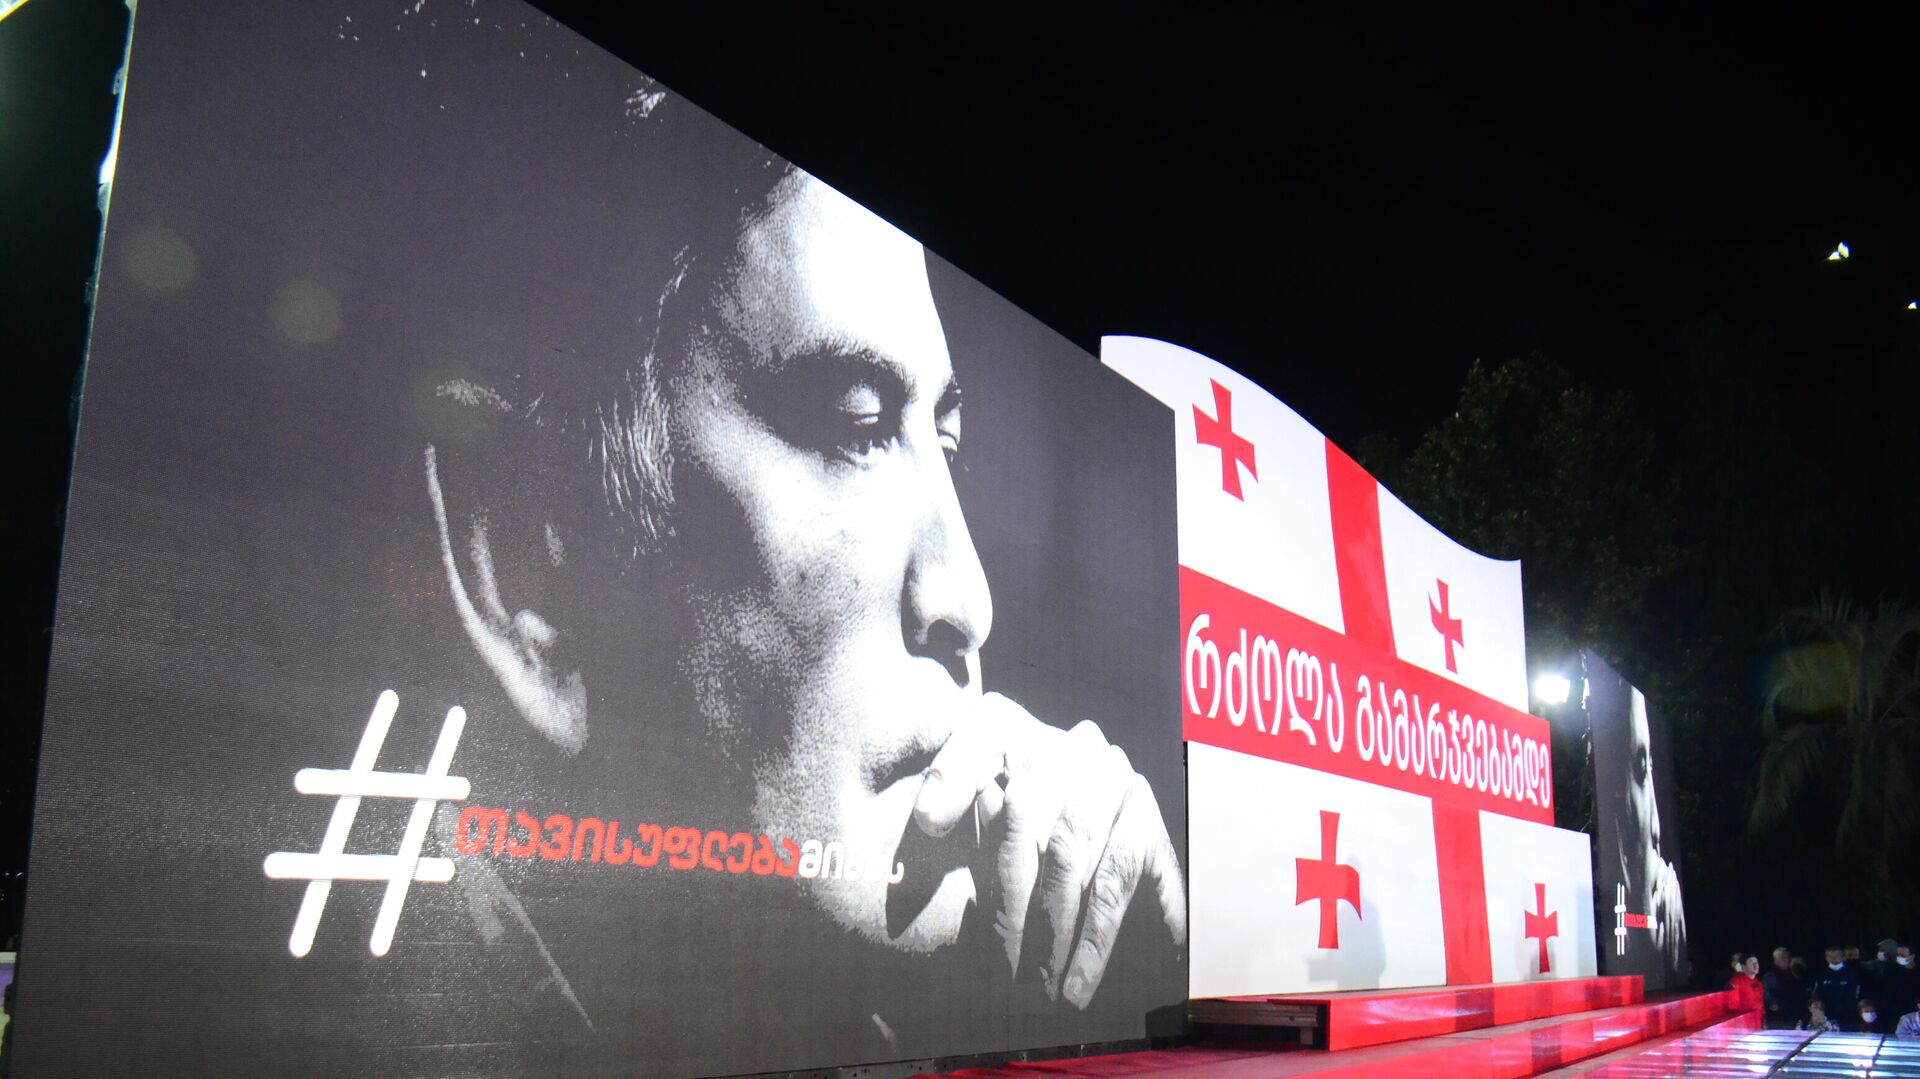 Михаил Саакашвили. Акция протеста оппозиции на батумском бульваре 23 октября  - Sputnik Грузия, 1920, 27.10.2021